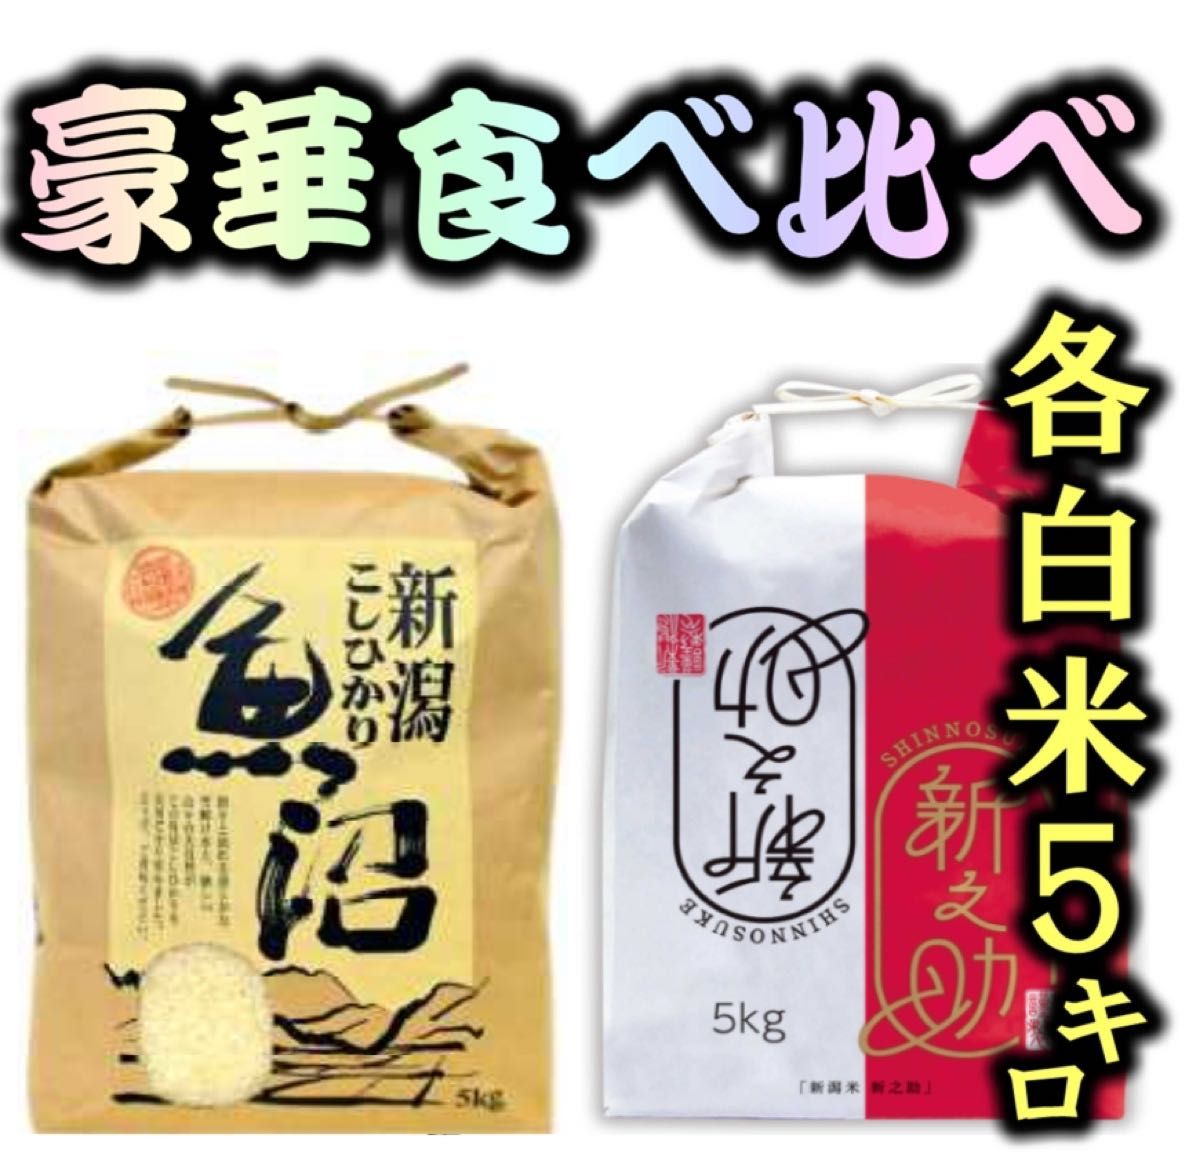 新潟県産コシヒカリ10kとミルキークイーン10k 食べ比べセット20k